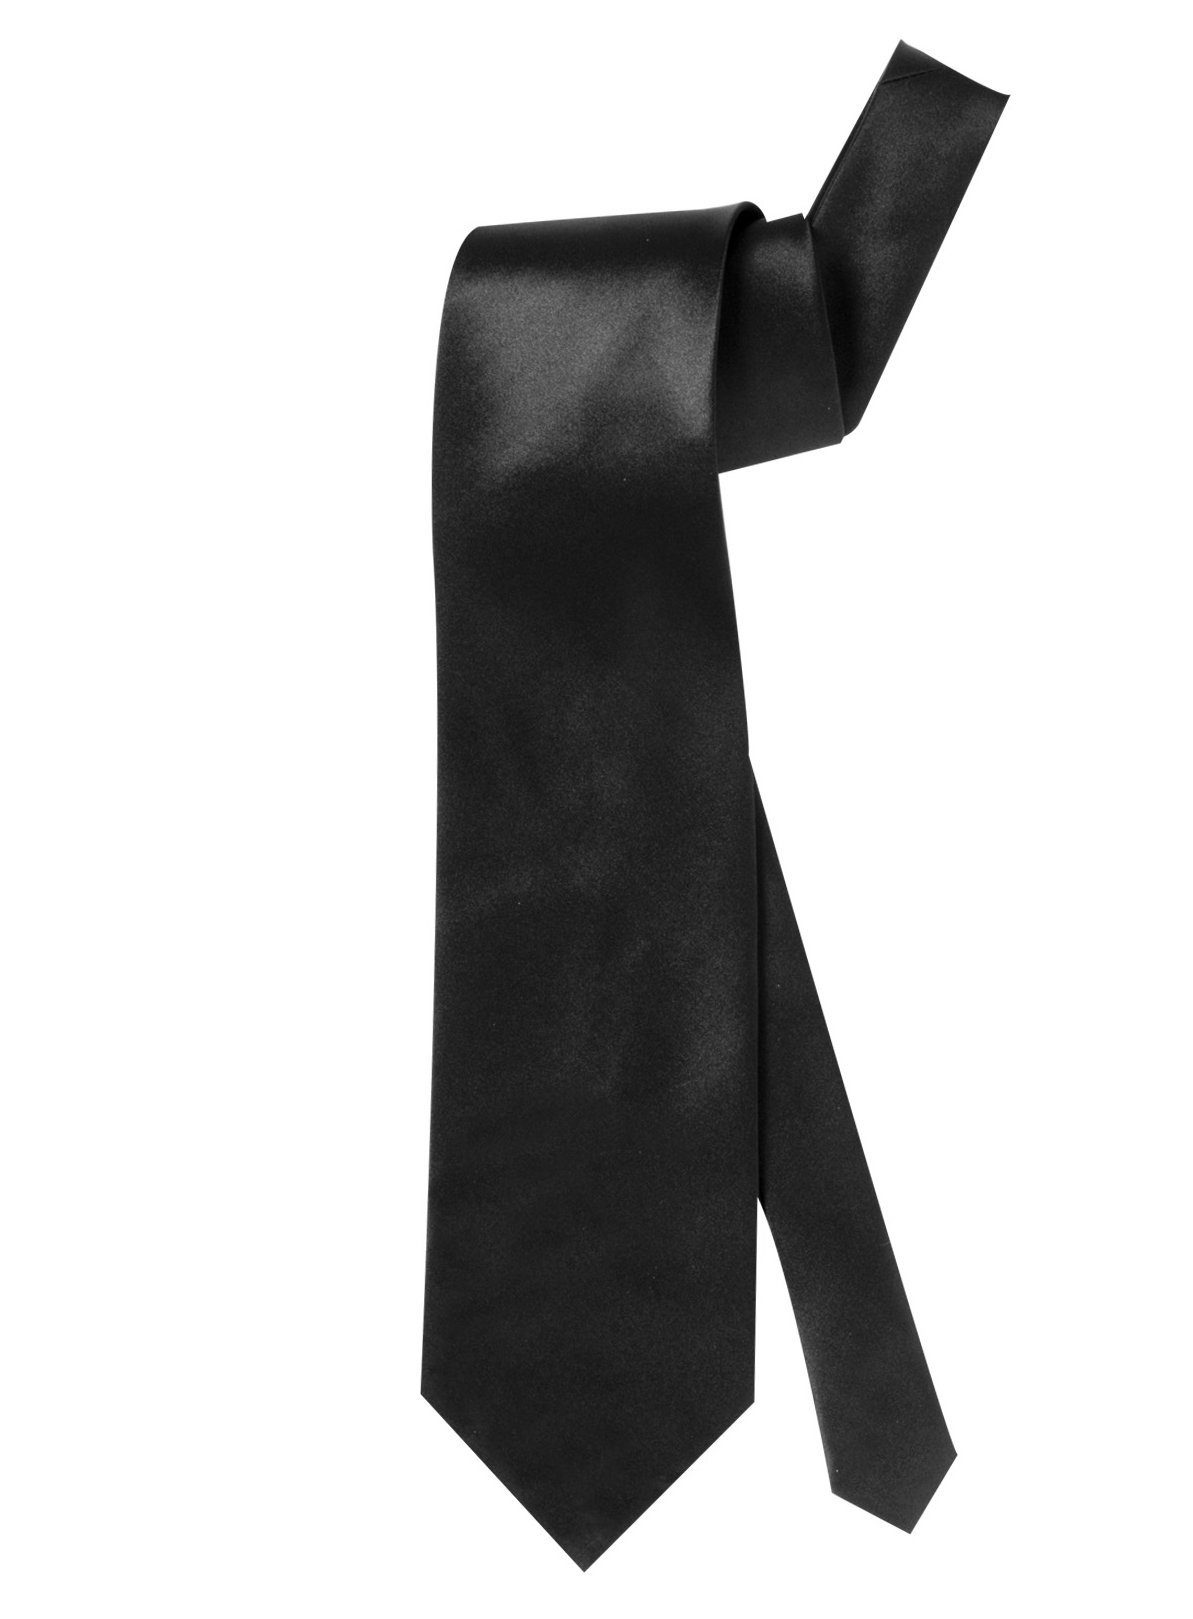 Widdmann Krawatte Krawatte Satin schwarz Krawatte in mittlerer Breite für jeden Zweck